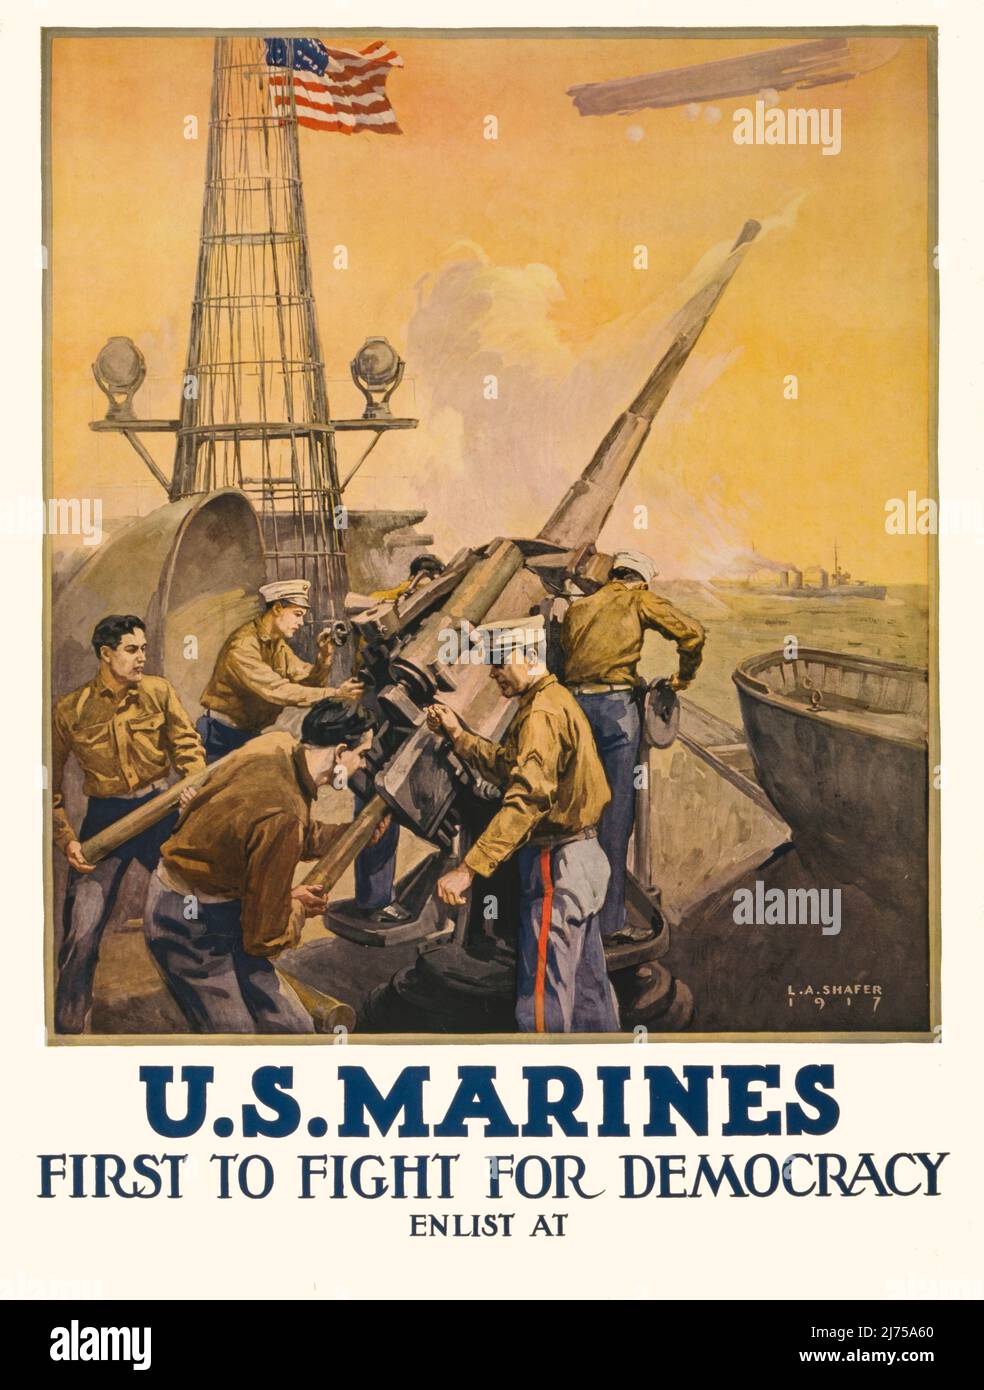 Une affiche de recrutement américaine du début du siècle 20th de la première Guerre mondiale, 1914-1918, montrant des marines tirant de l'artillerie à partir d'un navire. 1917. L'artiste est L. A. Shafer (1866-1940) Banque D'Images